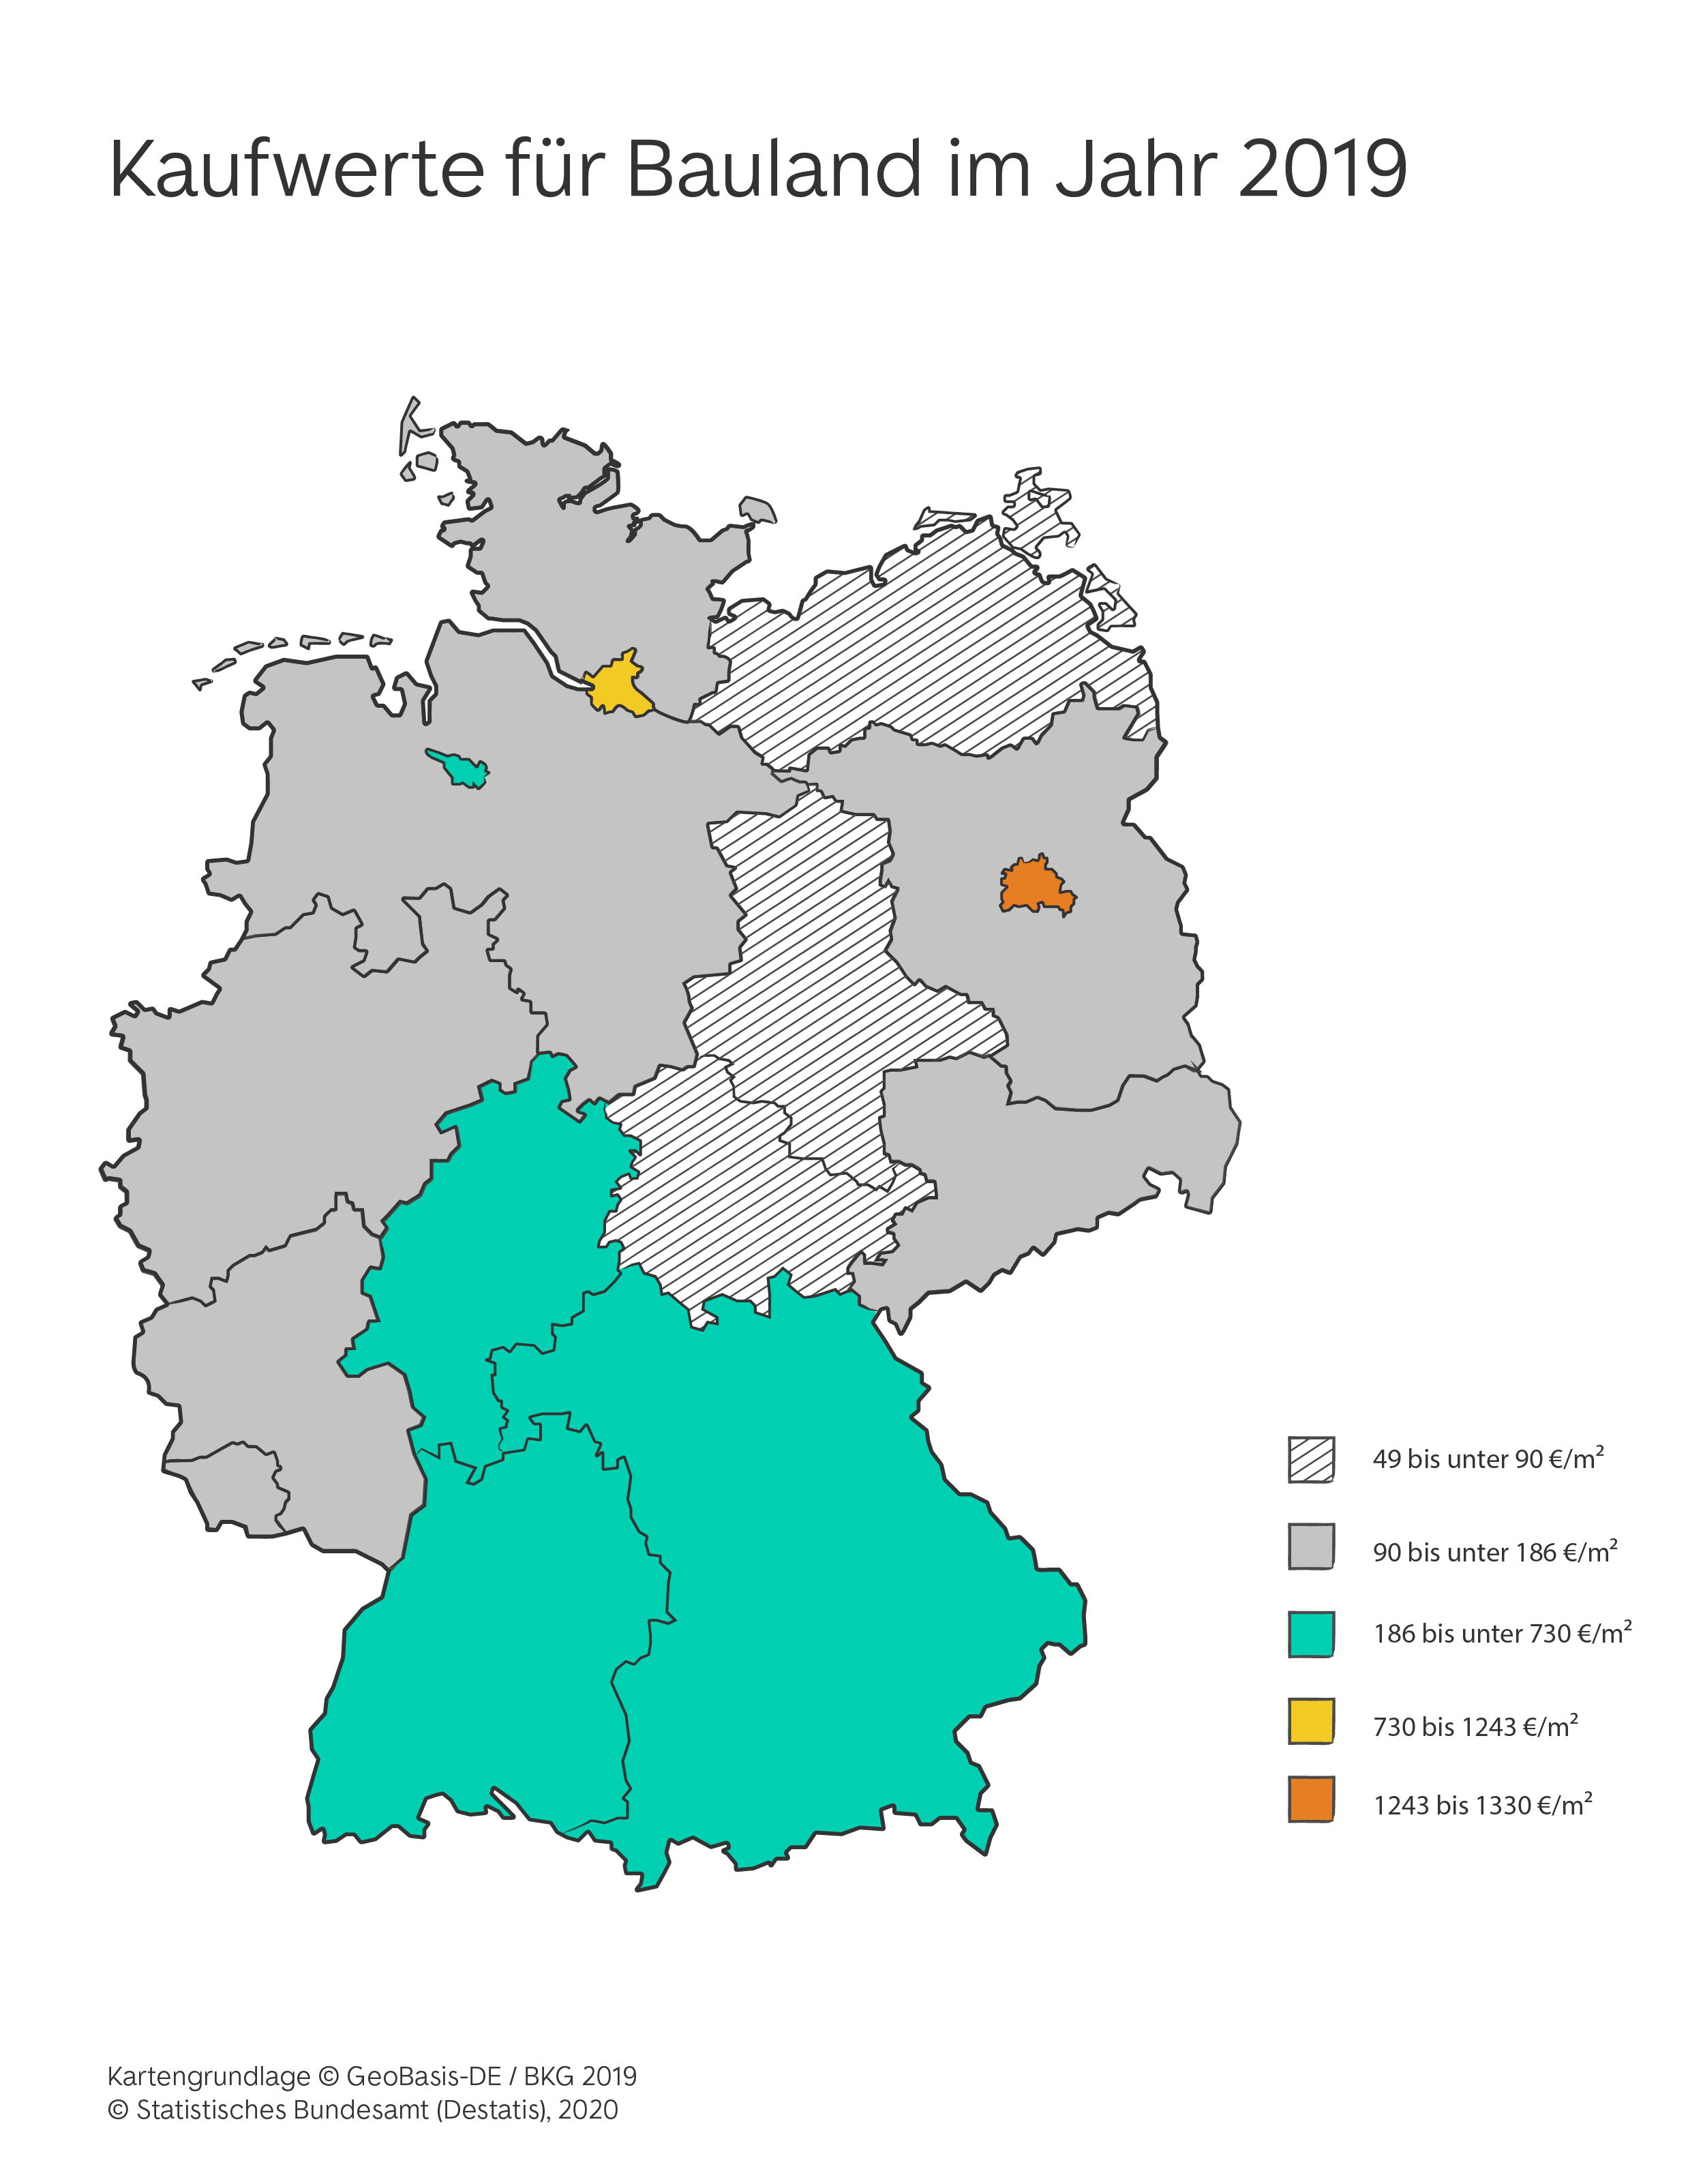 Deutschlandkarte, Bundesländer sind farblich markiert mach Kaufpreisen für Bauland